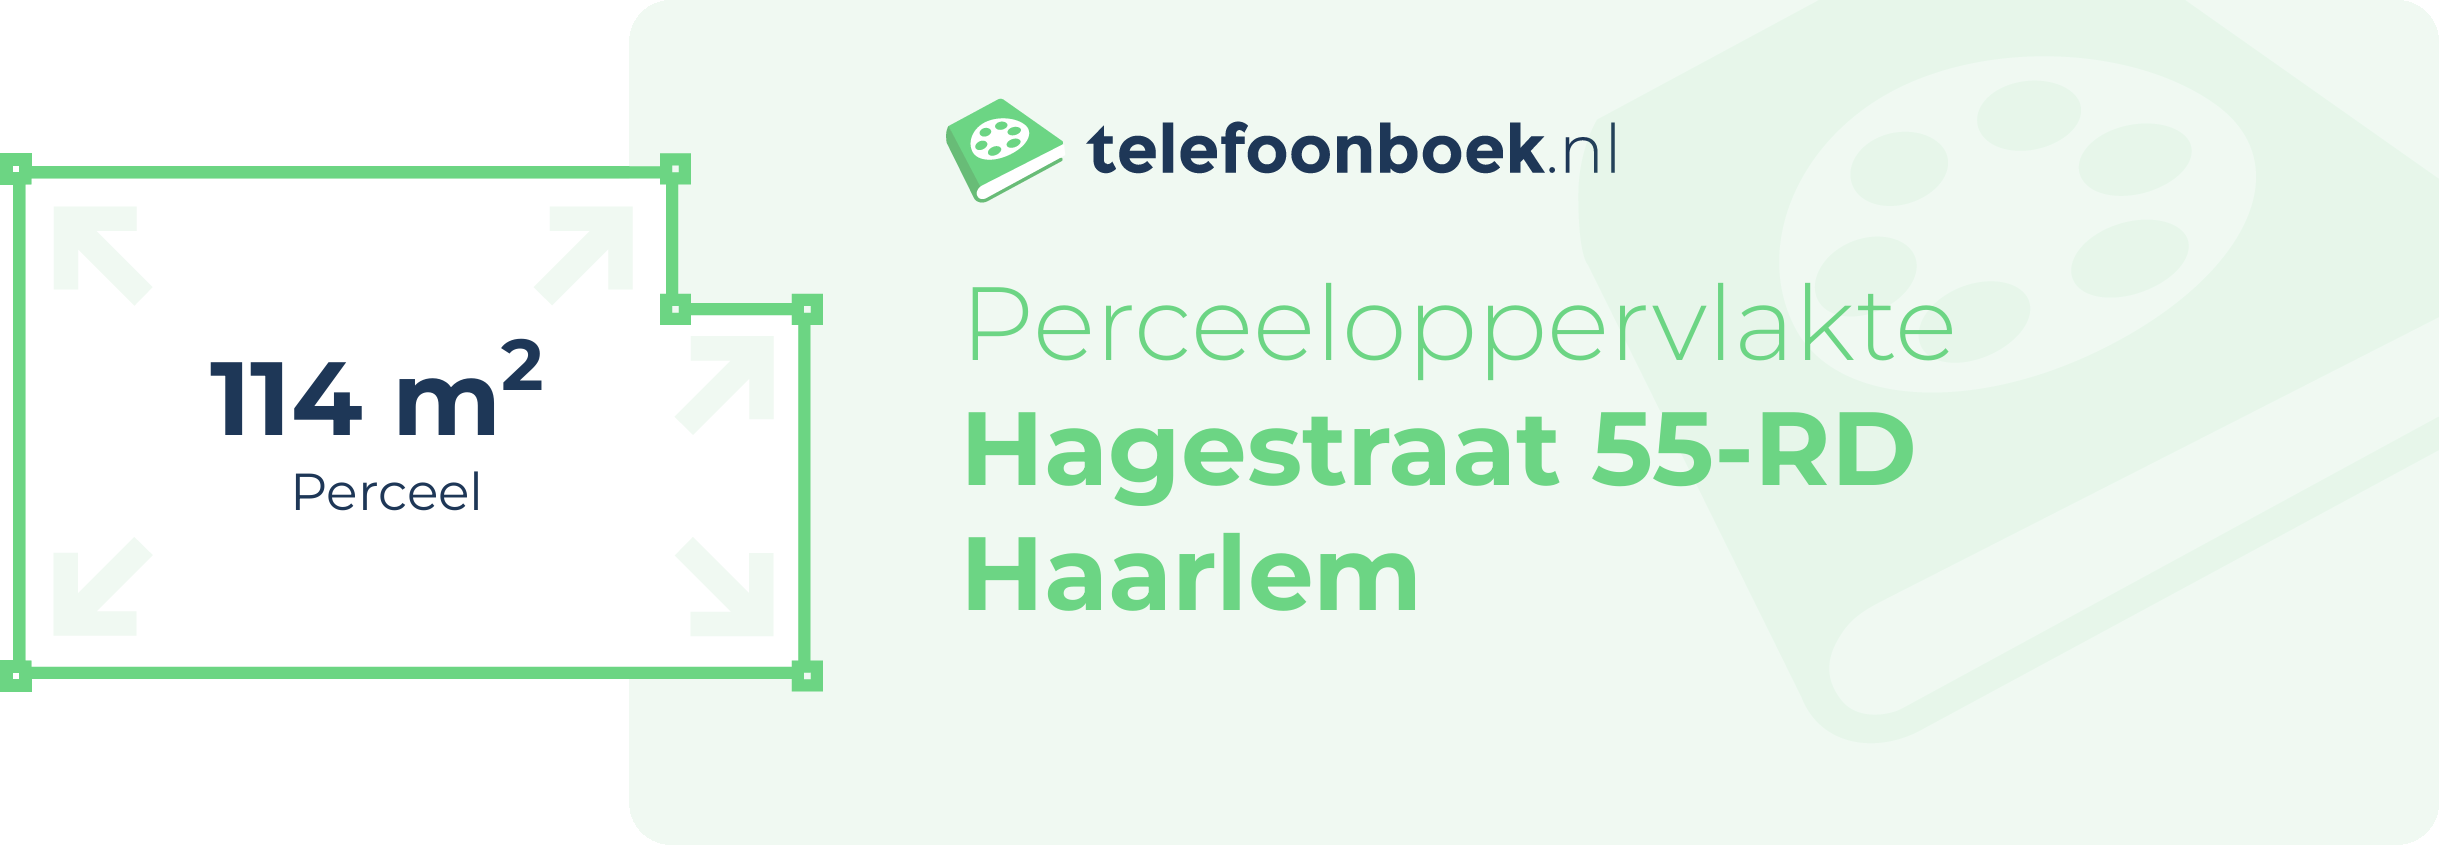 Perceeloppervlakte Hagestraat 55-RD Haarlem